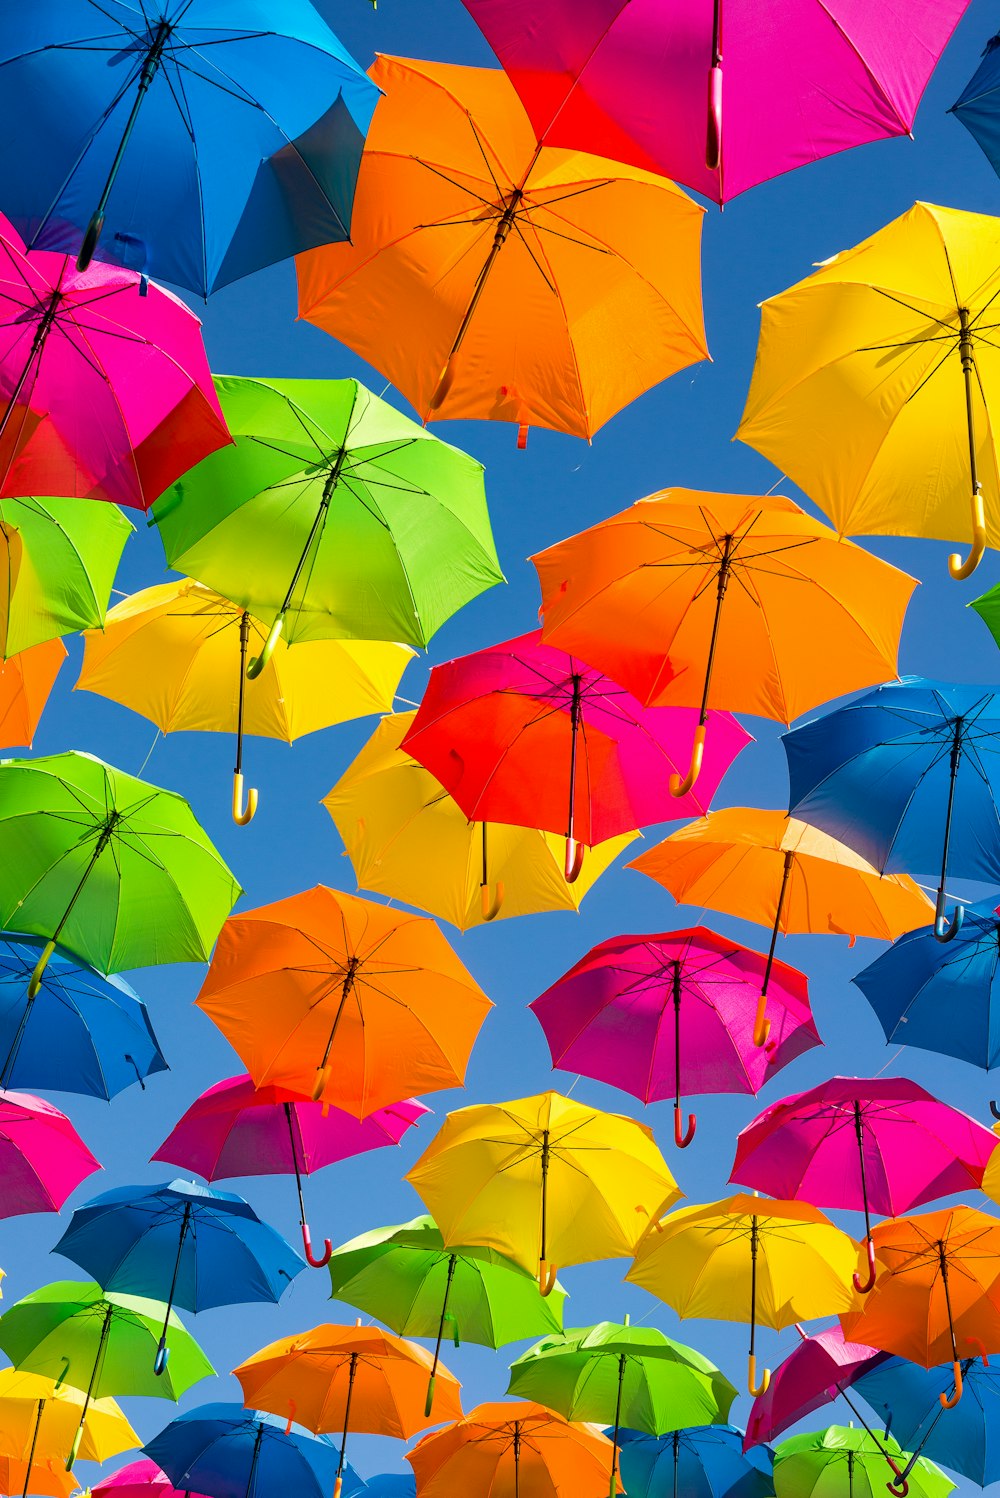 personne prenant une photo de parapluies de couleurs assorties